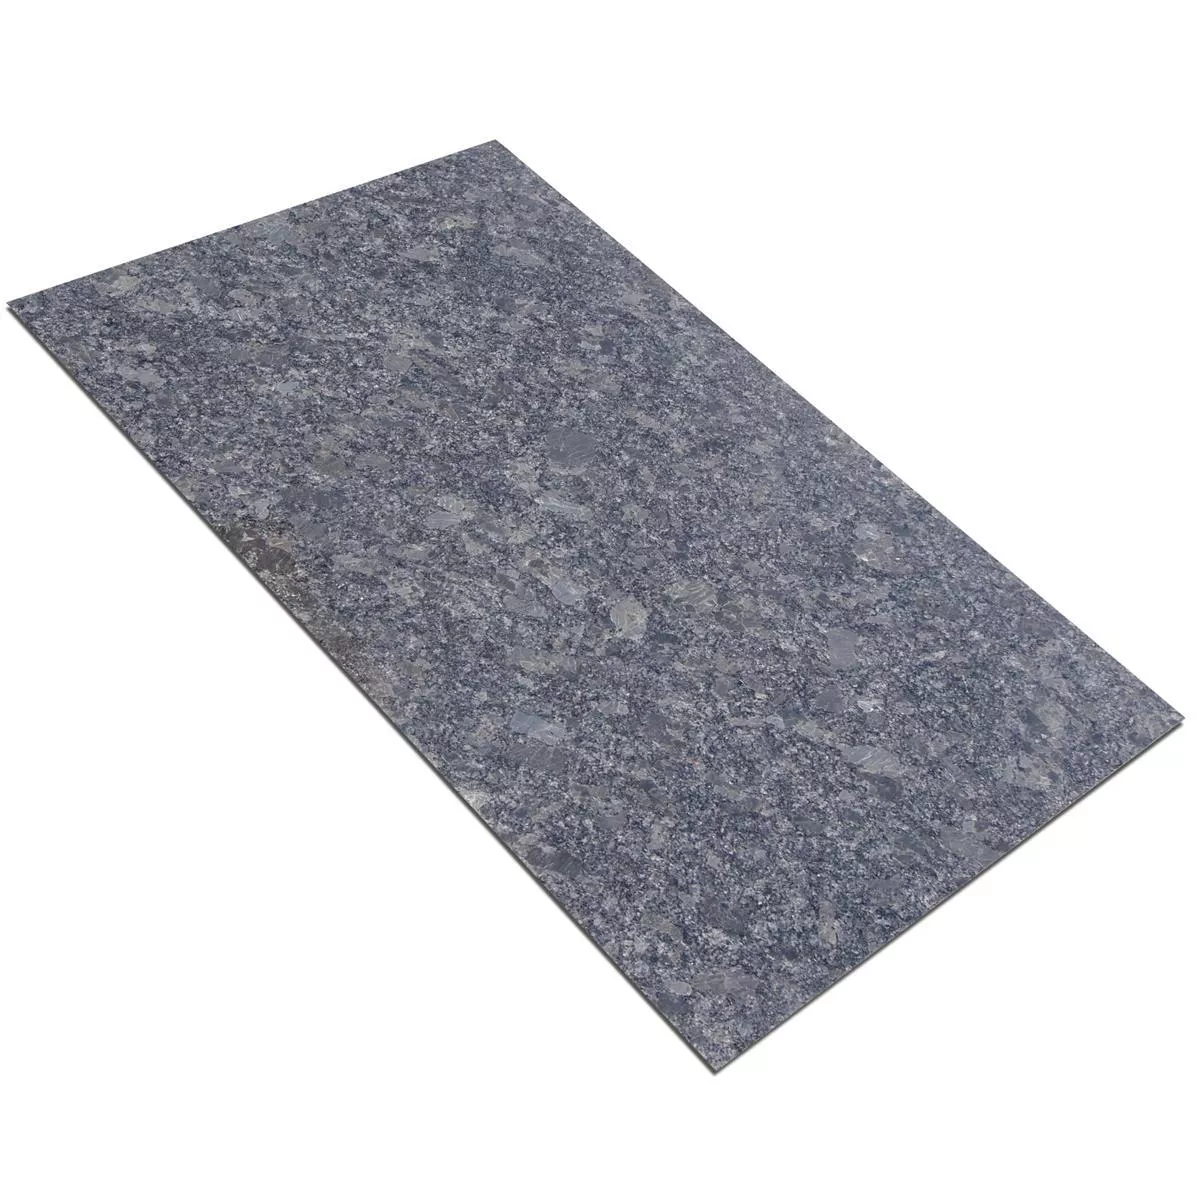 Sample Natural Stone Tiles Granite Old Grey Lappato 30,5x61cm